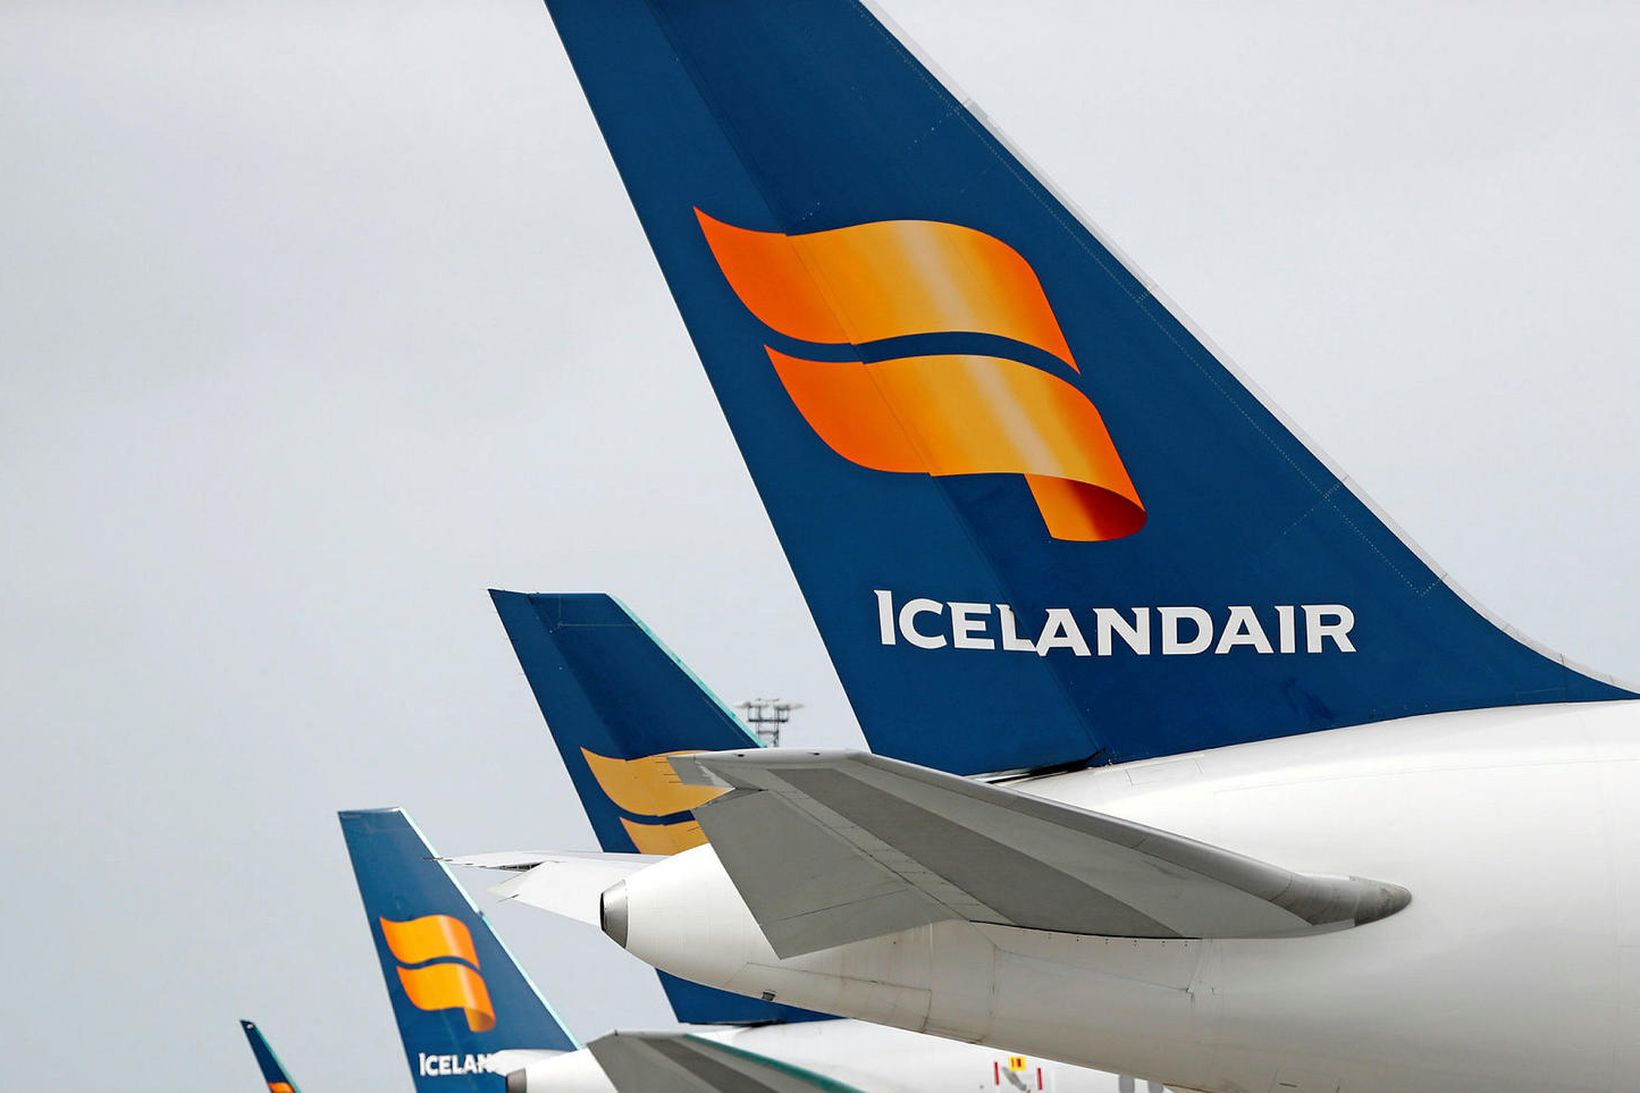 Tilboð Icelandair hefur verið sent félagsmönnum Flugfreyjufélags Íslands.